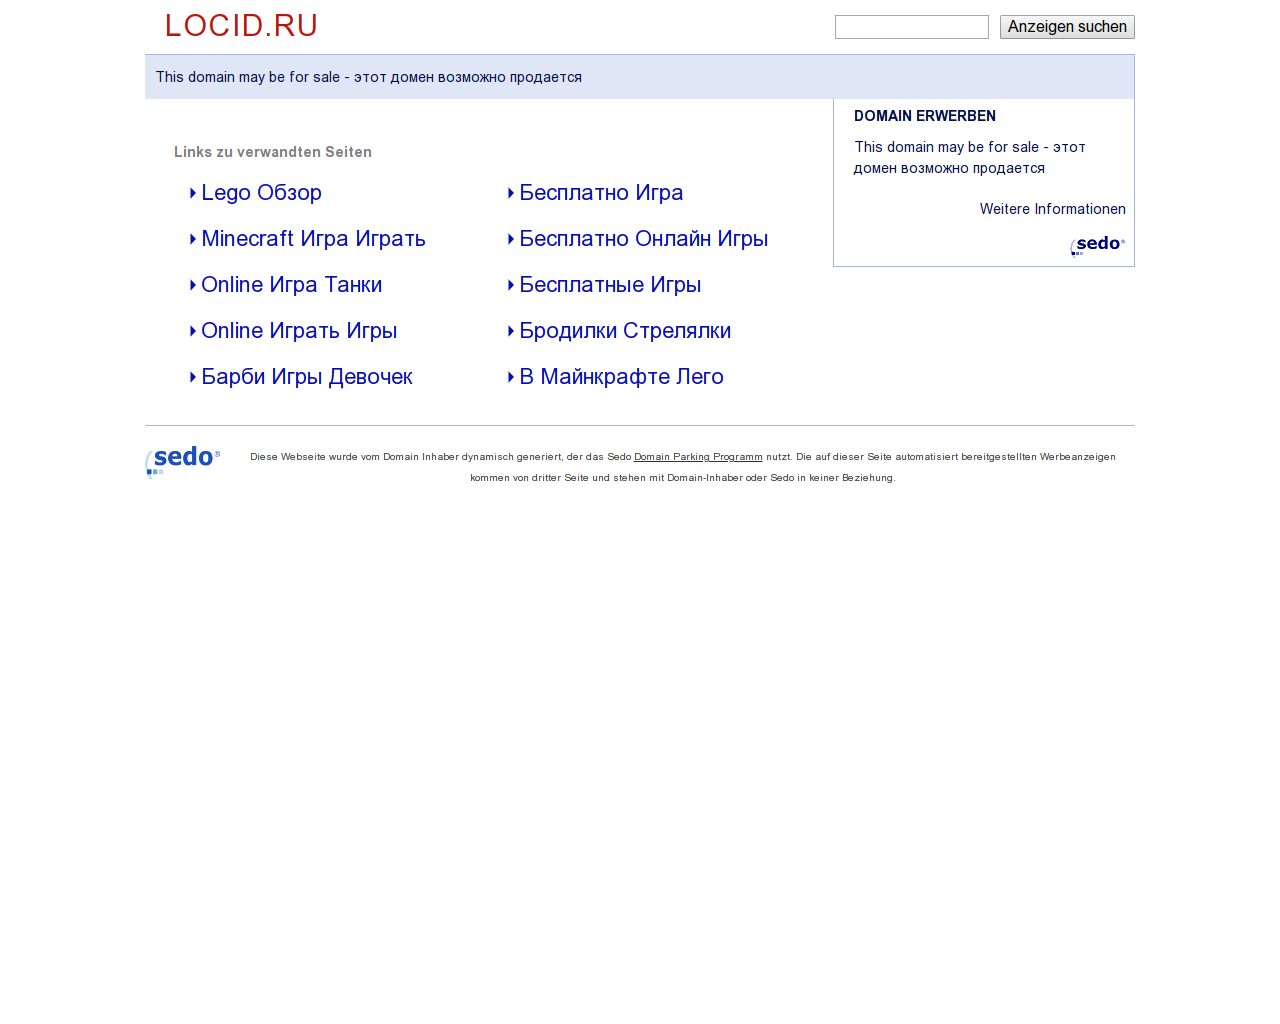 Изображение сайта locid.ru в разрешении 1280x1024